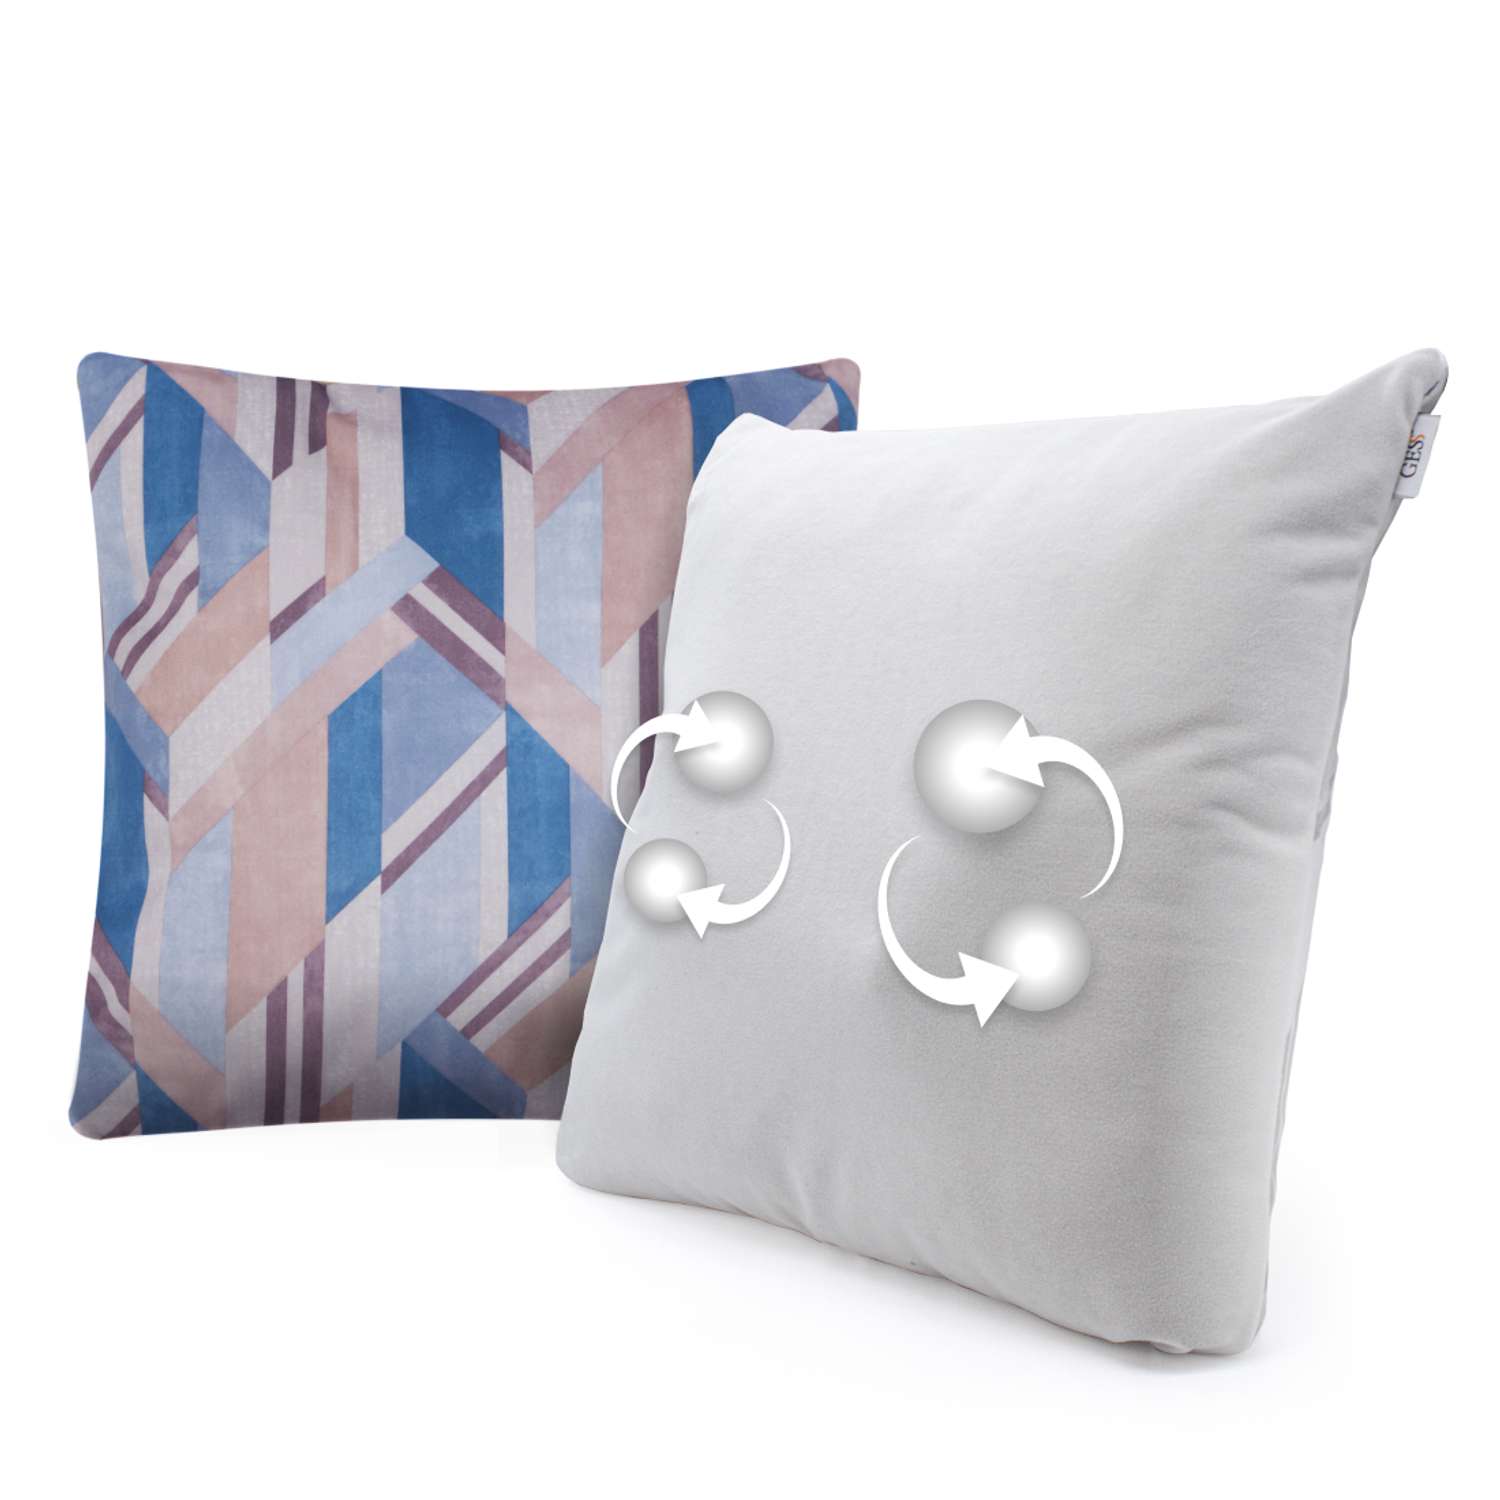 Массажная подушка для тела GESS Decora синяя в комплекте с декоративной подушкой 1шт и наволочками 2шт - фото 1